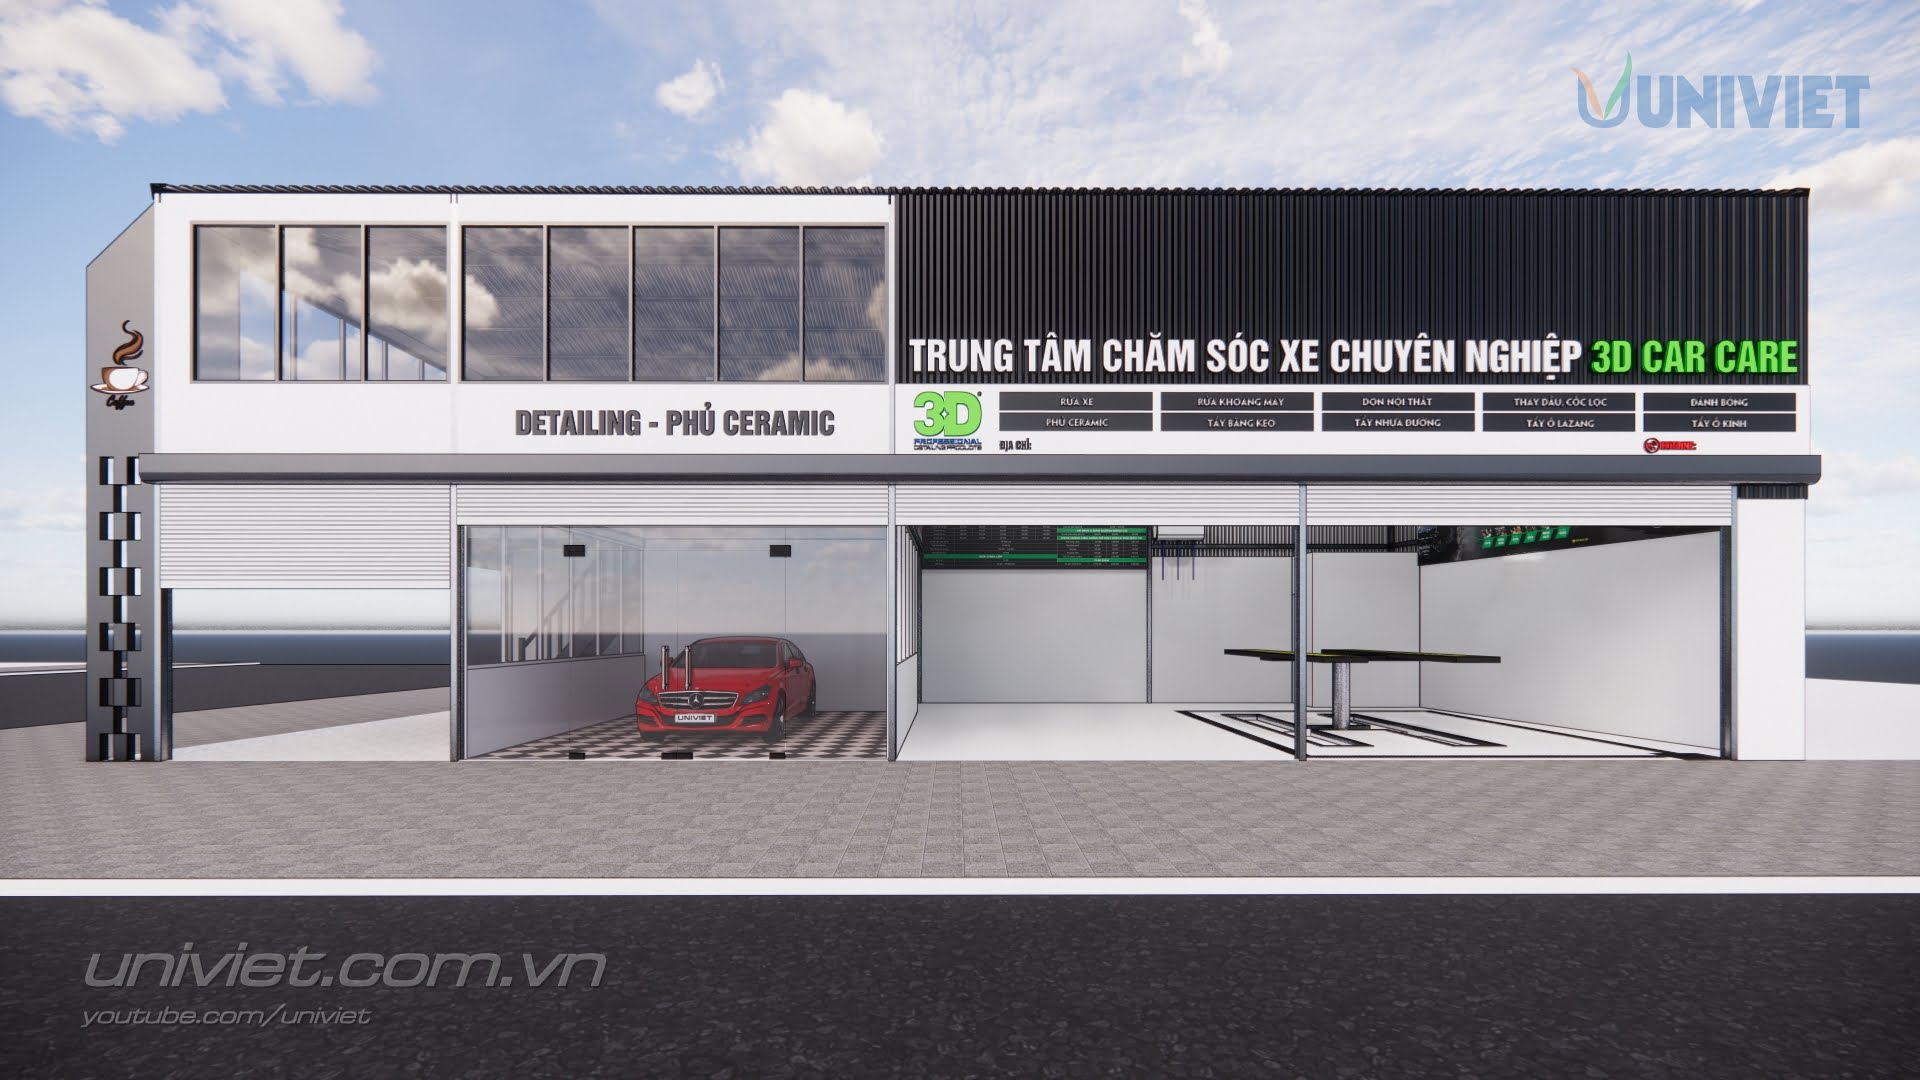 Mô hình 3D Trung tâm chăm sóc xe hơi chuyên nghiệp tại Bình Thuận